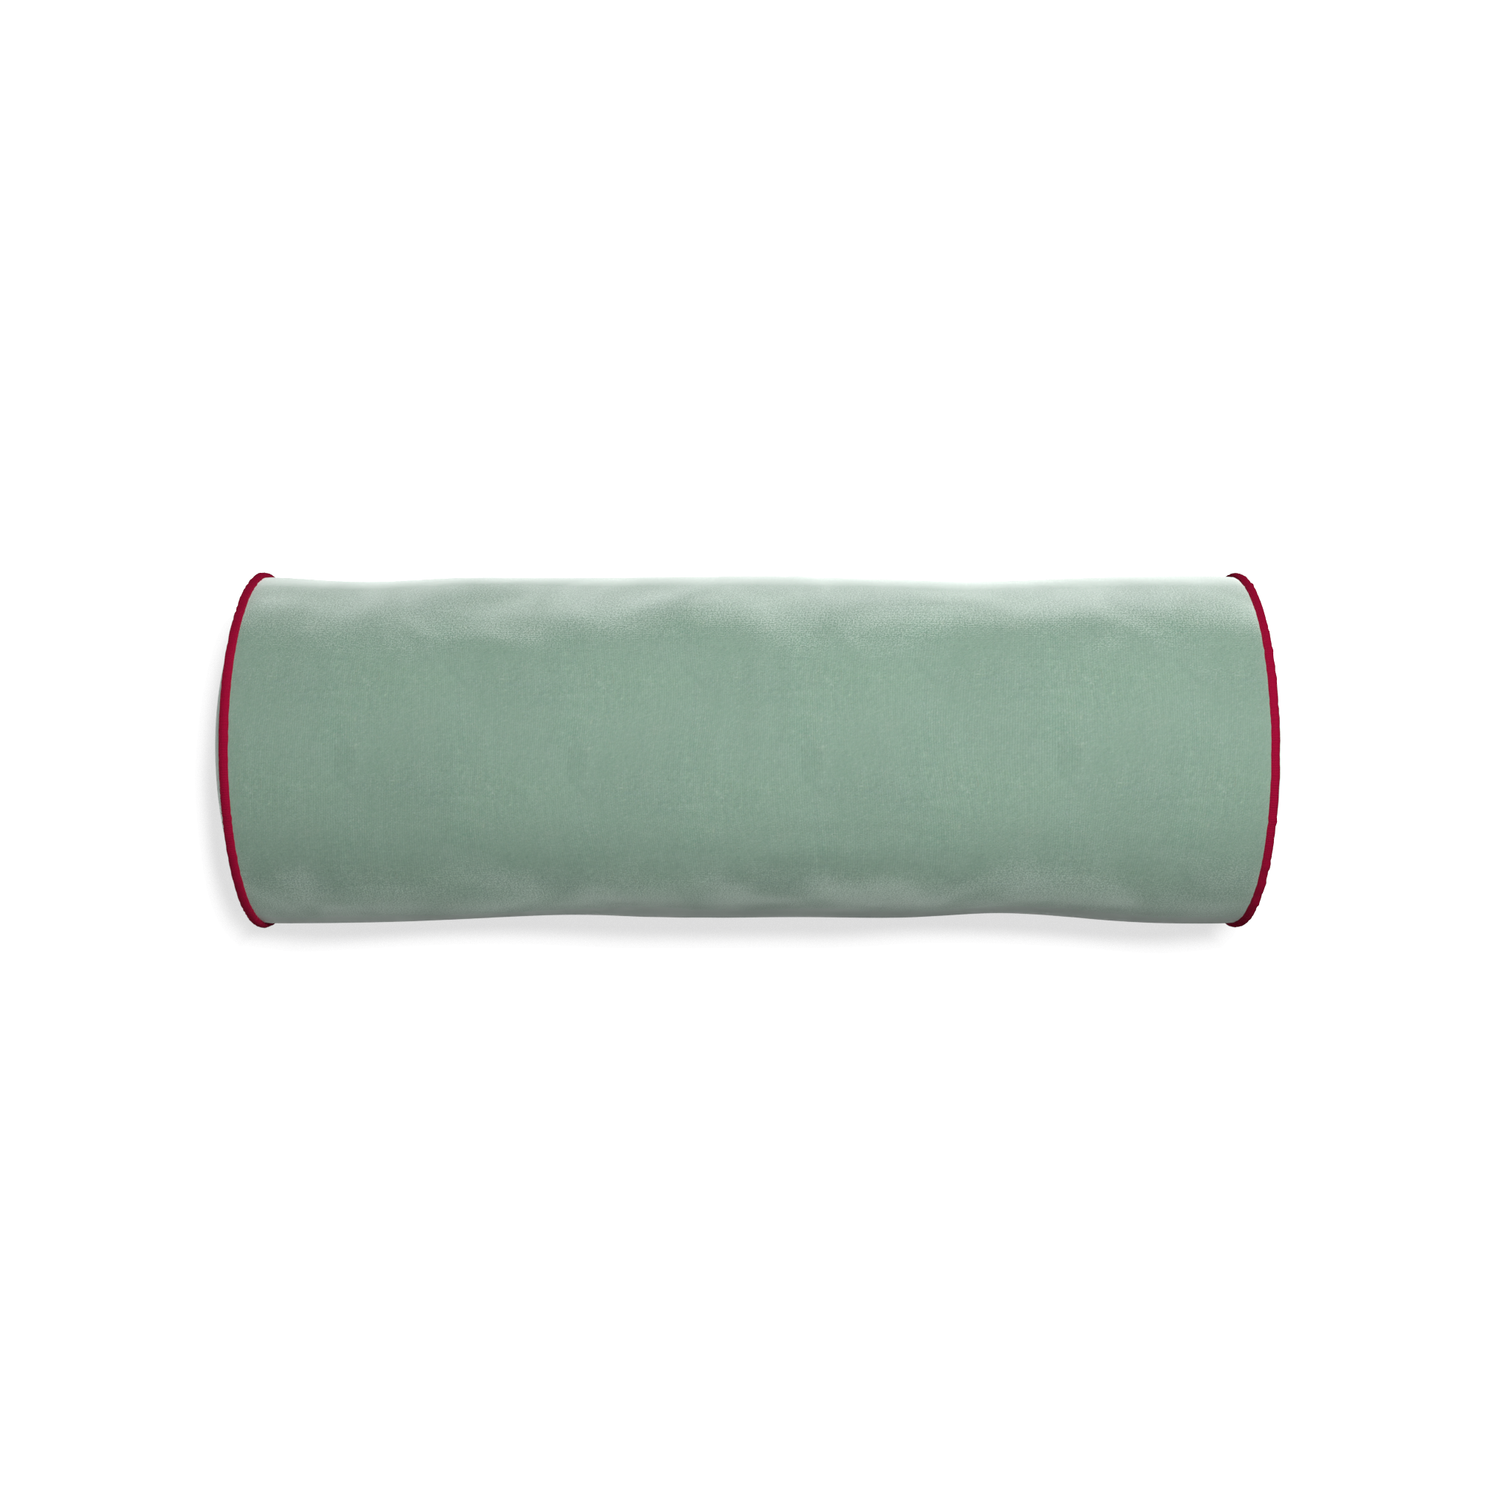 bolster blue green velvet pillow with dark red piping